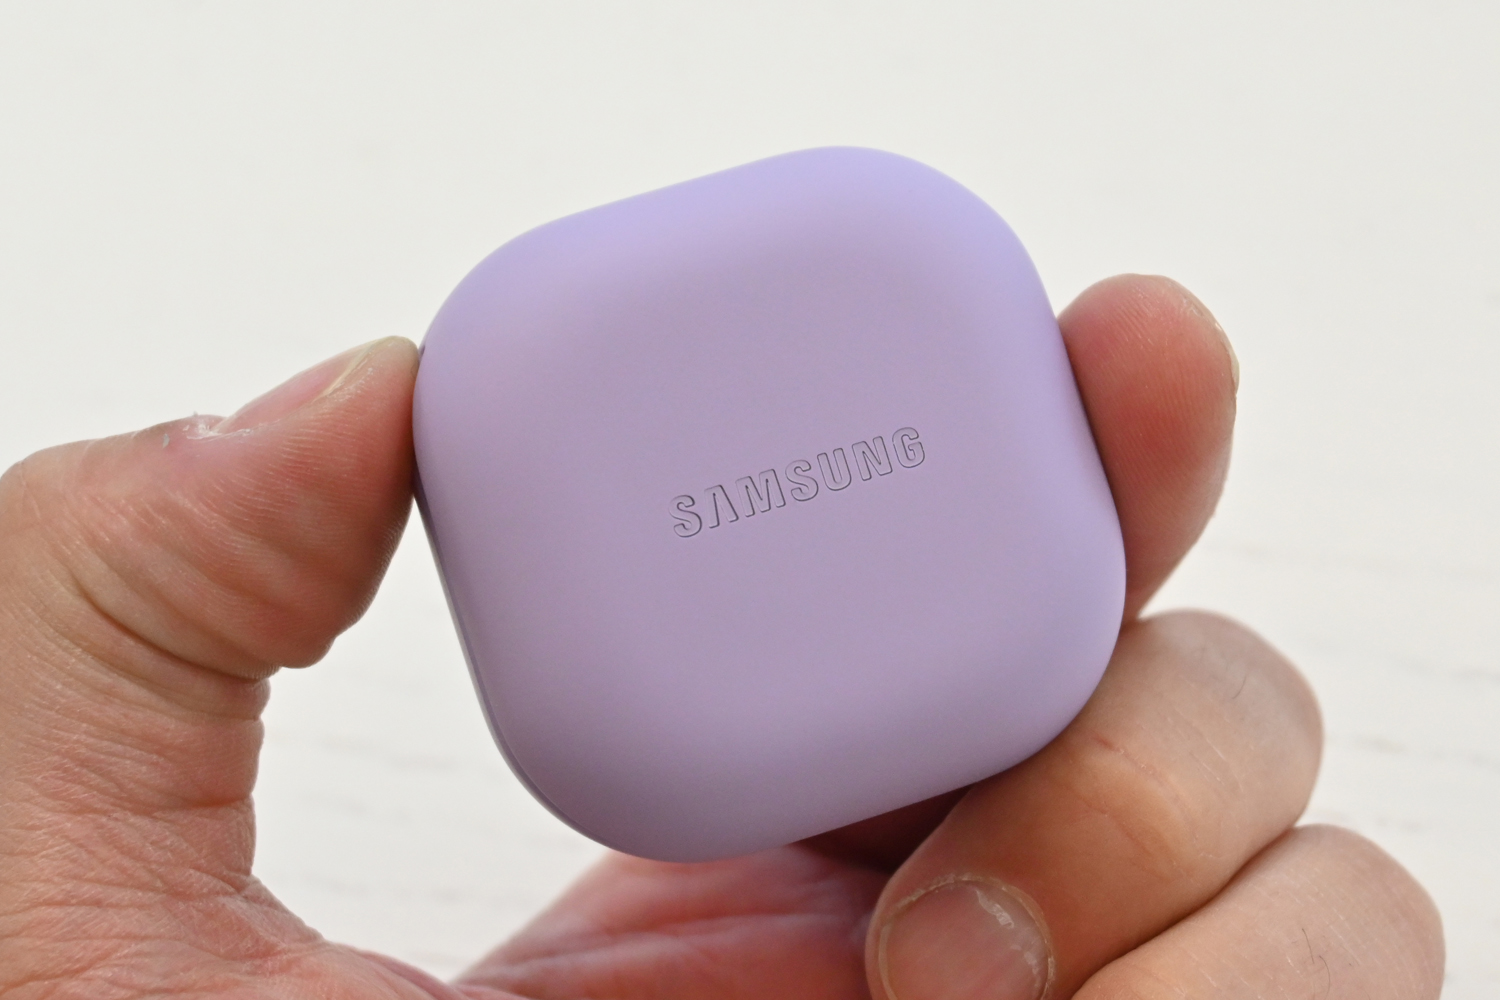 Samsung Galaxy Buds Pro 2 case in hand